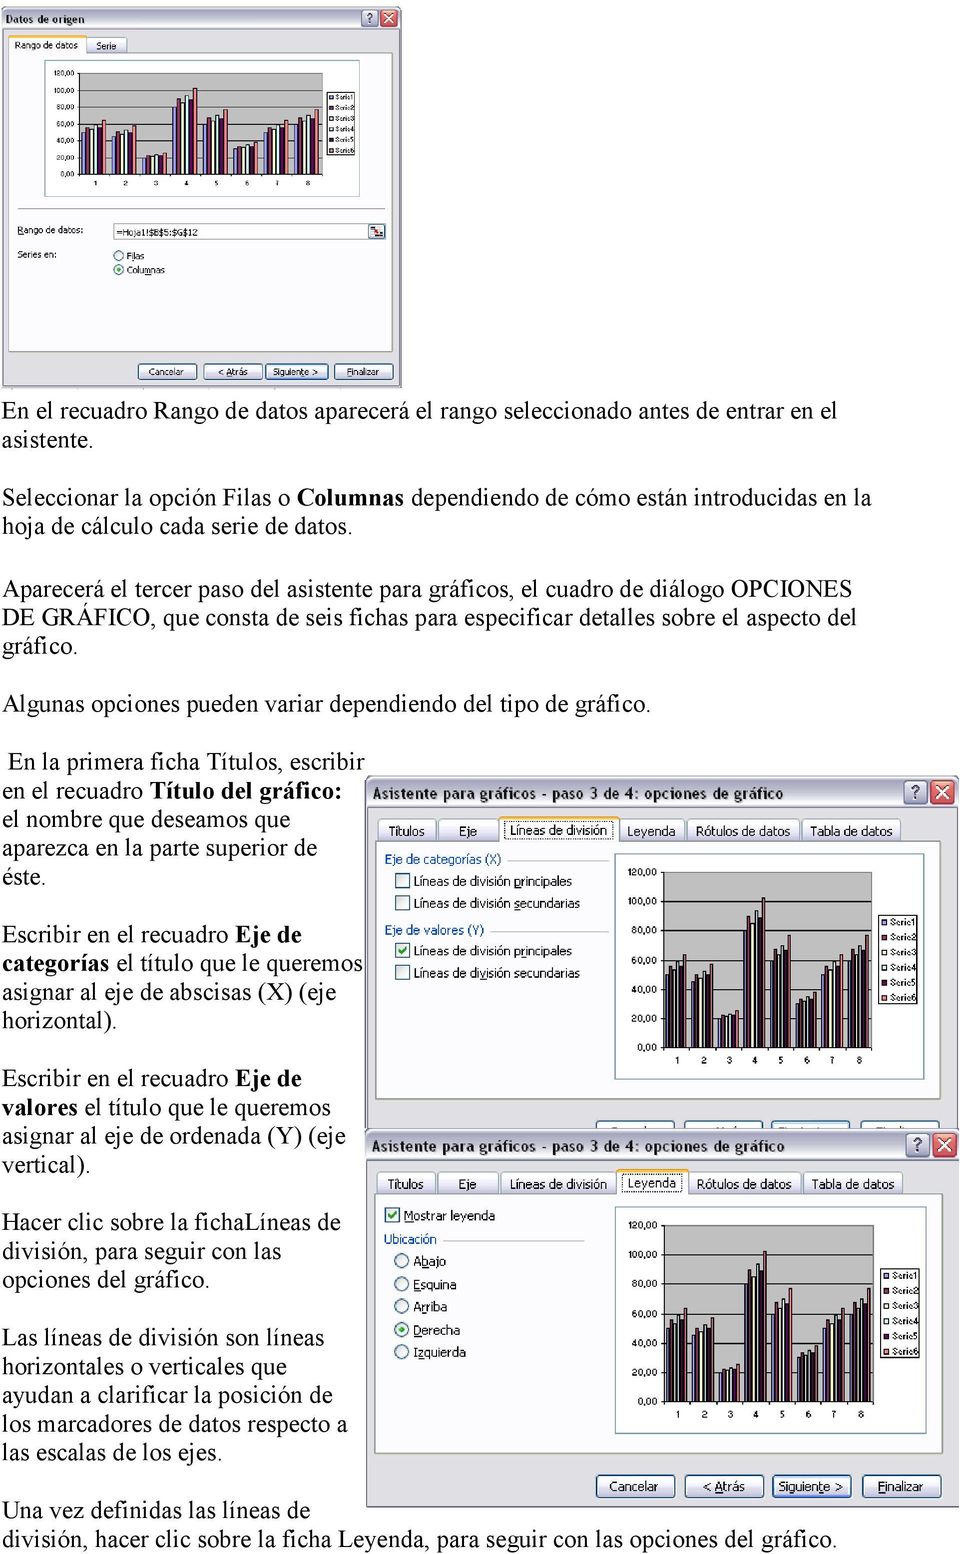 Aparecerá el tercer paso del asistente para gráficos, el cuadro de diálogo OPCIONES DE GRÁFICO, que consta de seis fichas para especificar detalles sobre el aspecto del gráfico.